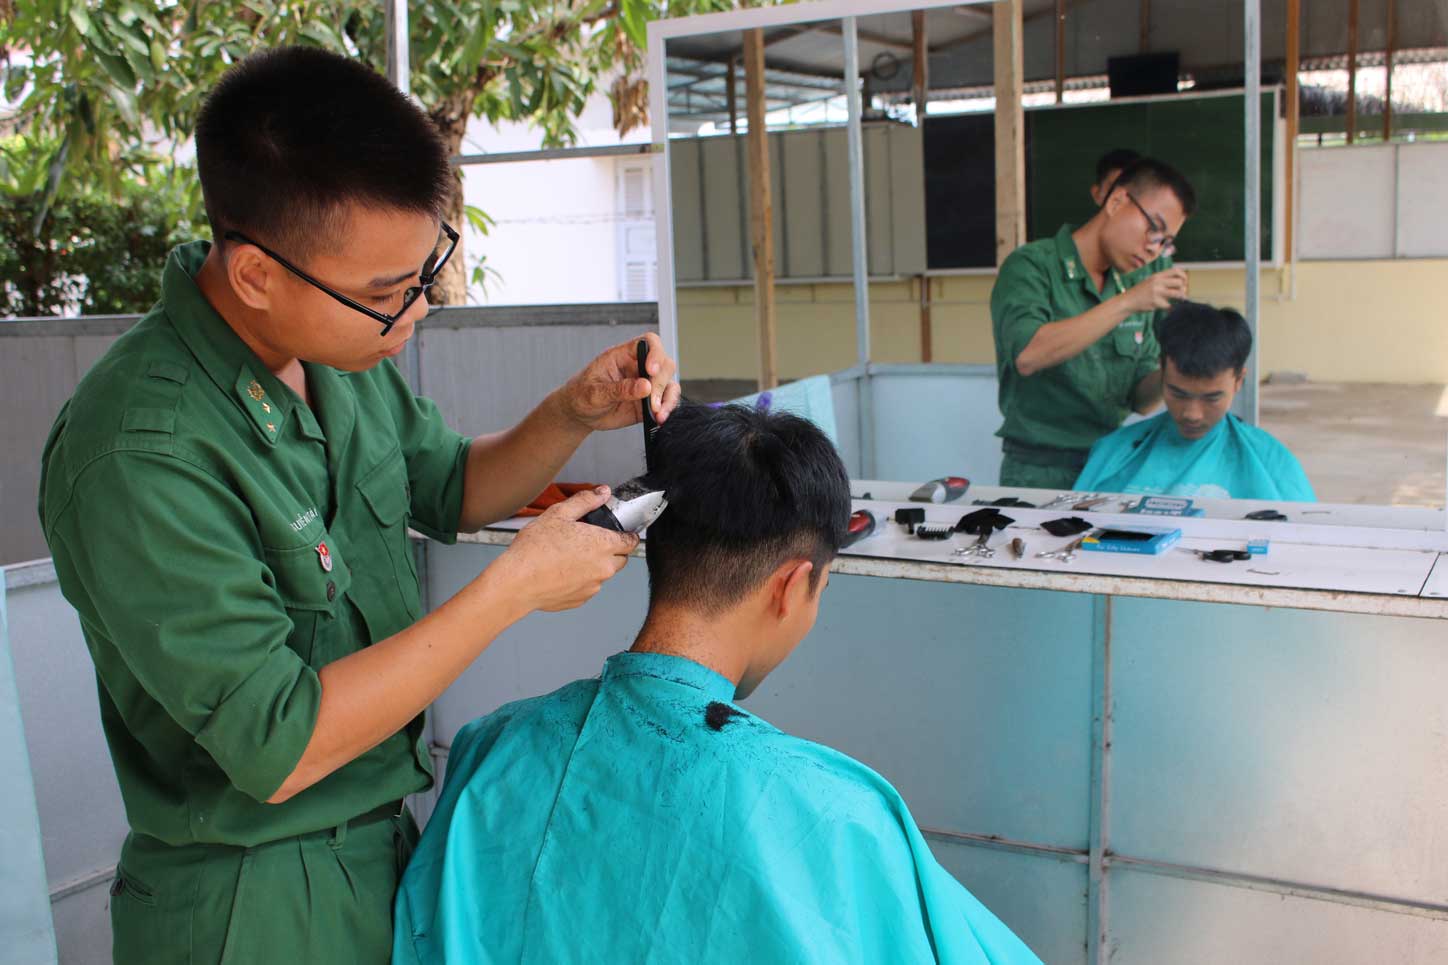 Bình quân mỗi tháng, câu lạc bộ cắt tóc cho hơn 200 cán bộ, chiến sĩ trong đơn vị